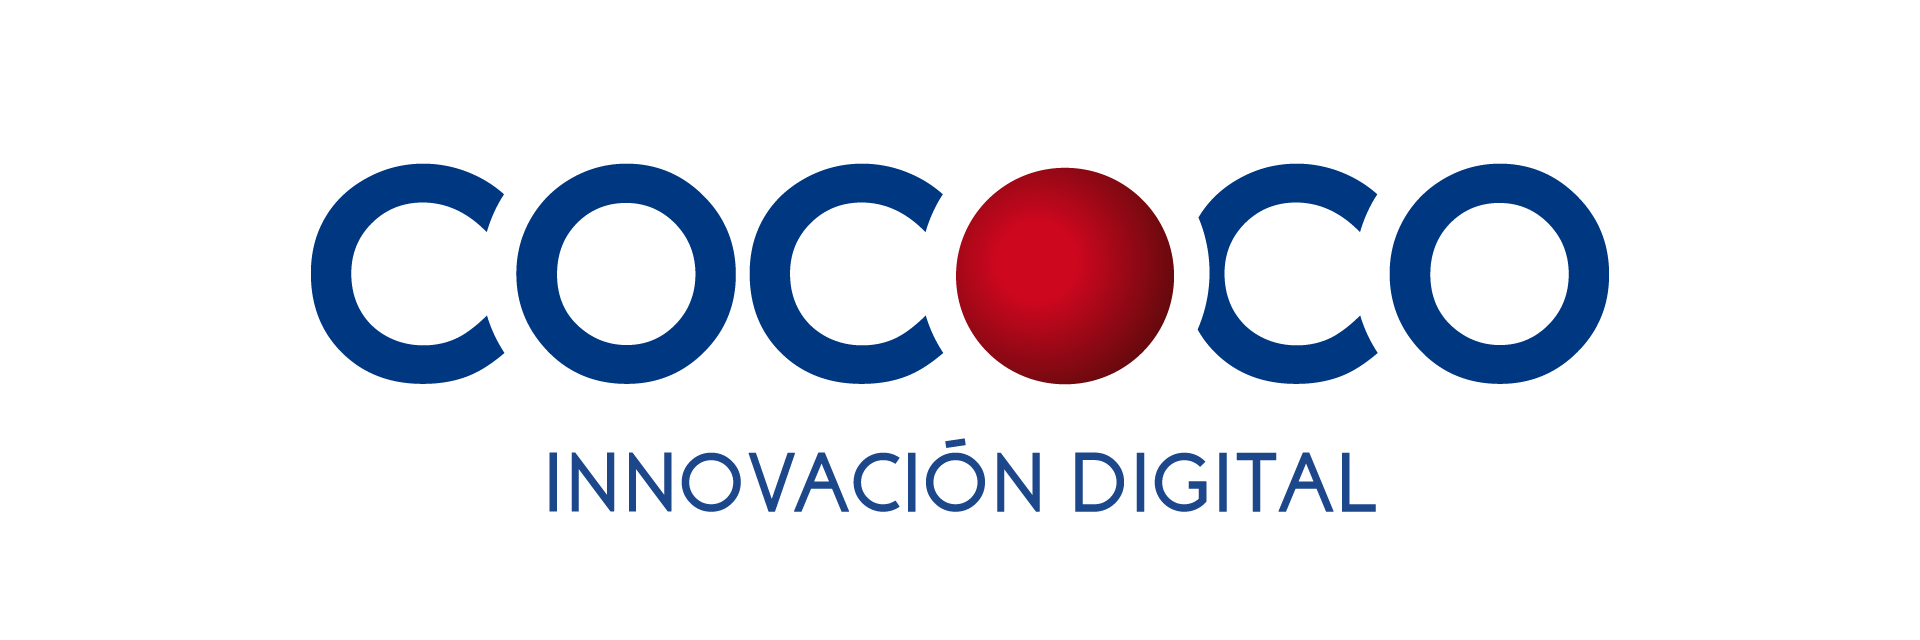 Cococo Innovación Digital